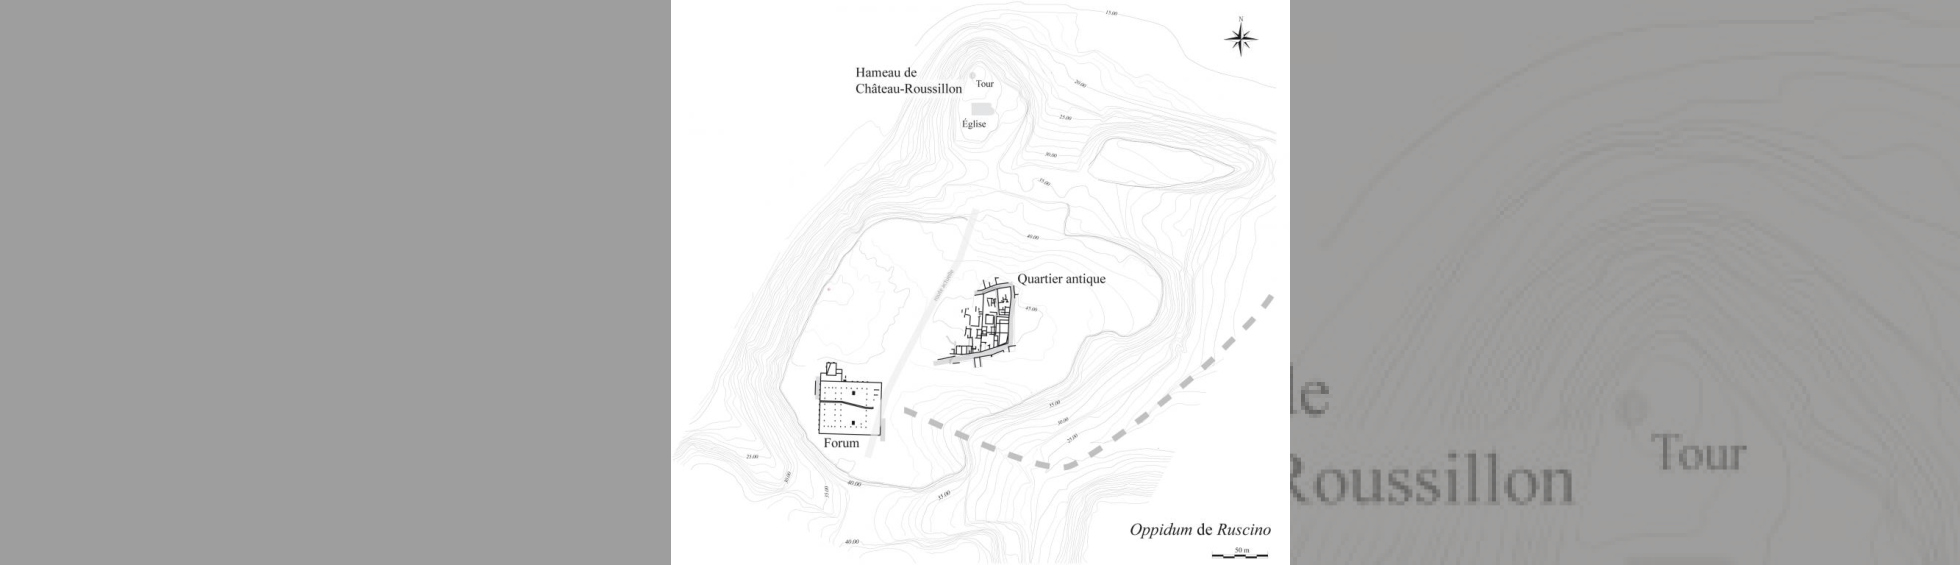 Plan des fouilles de Ruscino: à gauche le forum et la basilique ;à droite le quartier d'habitations